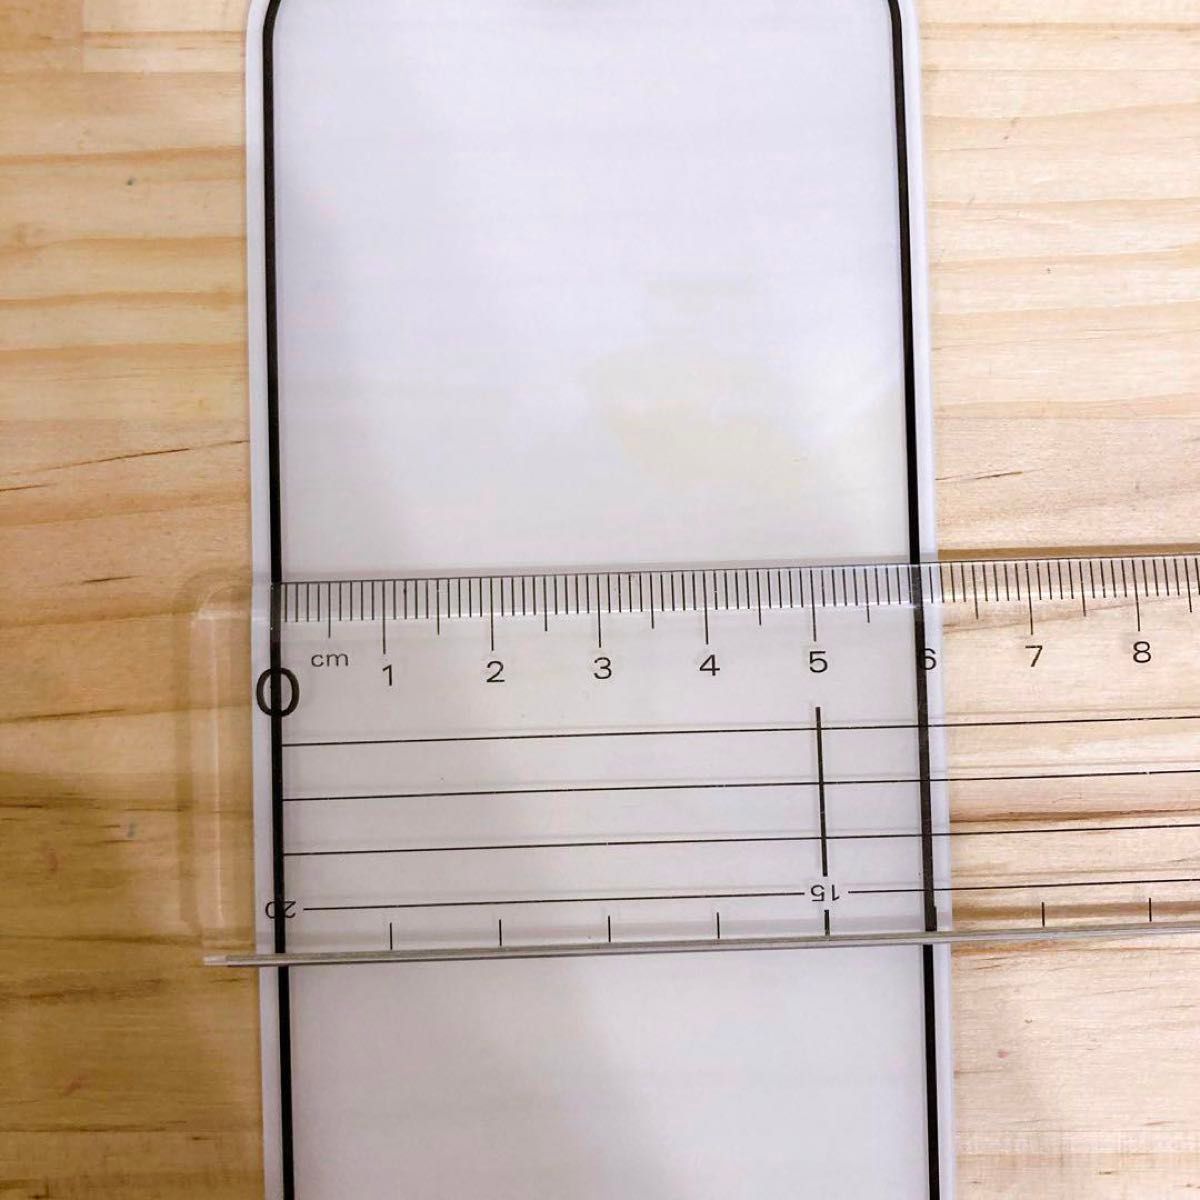 iPhone12 mini スマホフィルム 保護 カバー 強化ガラス iPhone クリアガラス